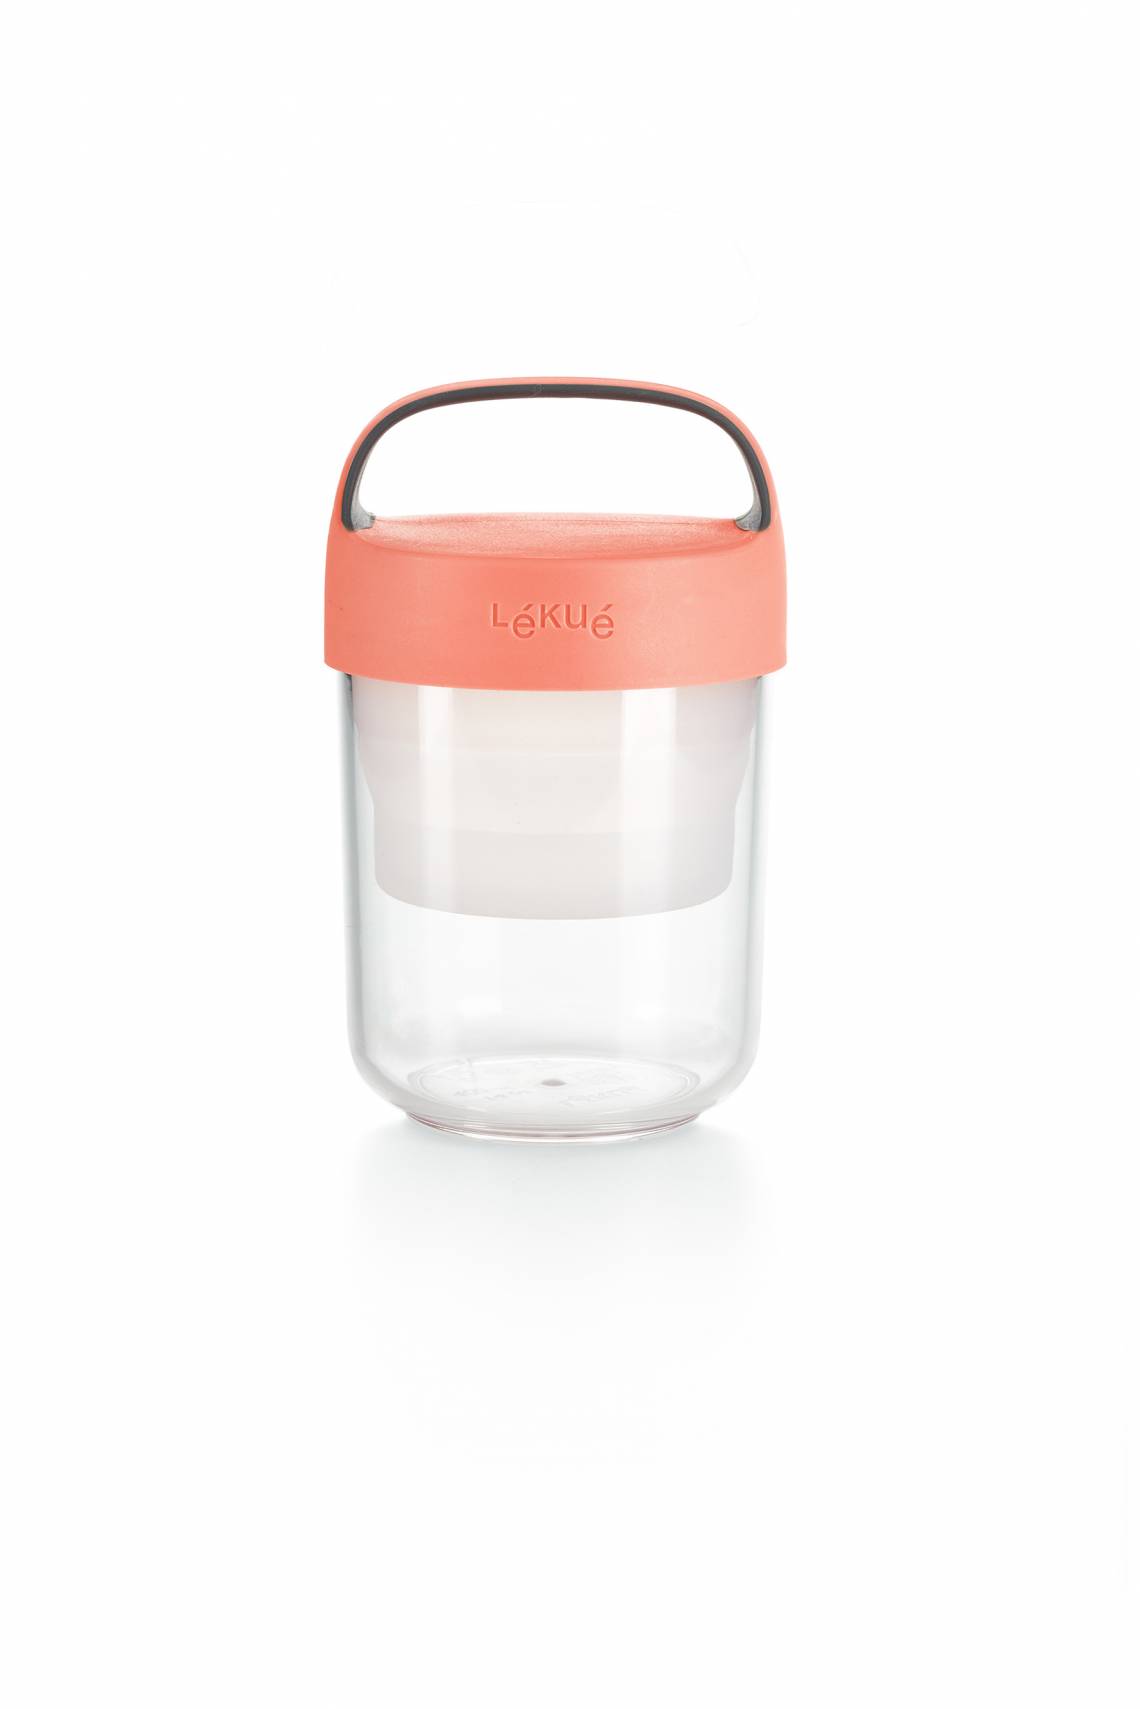 lekue - Jar to go - Lunchbox für unterwegs - rosa klein